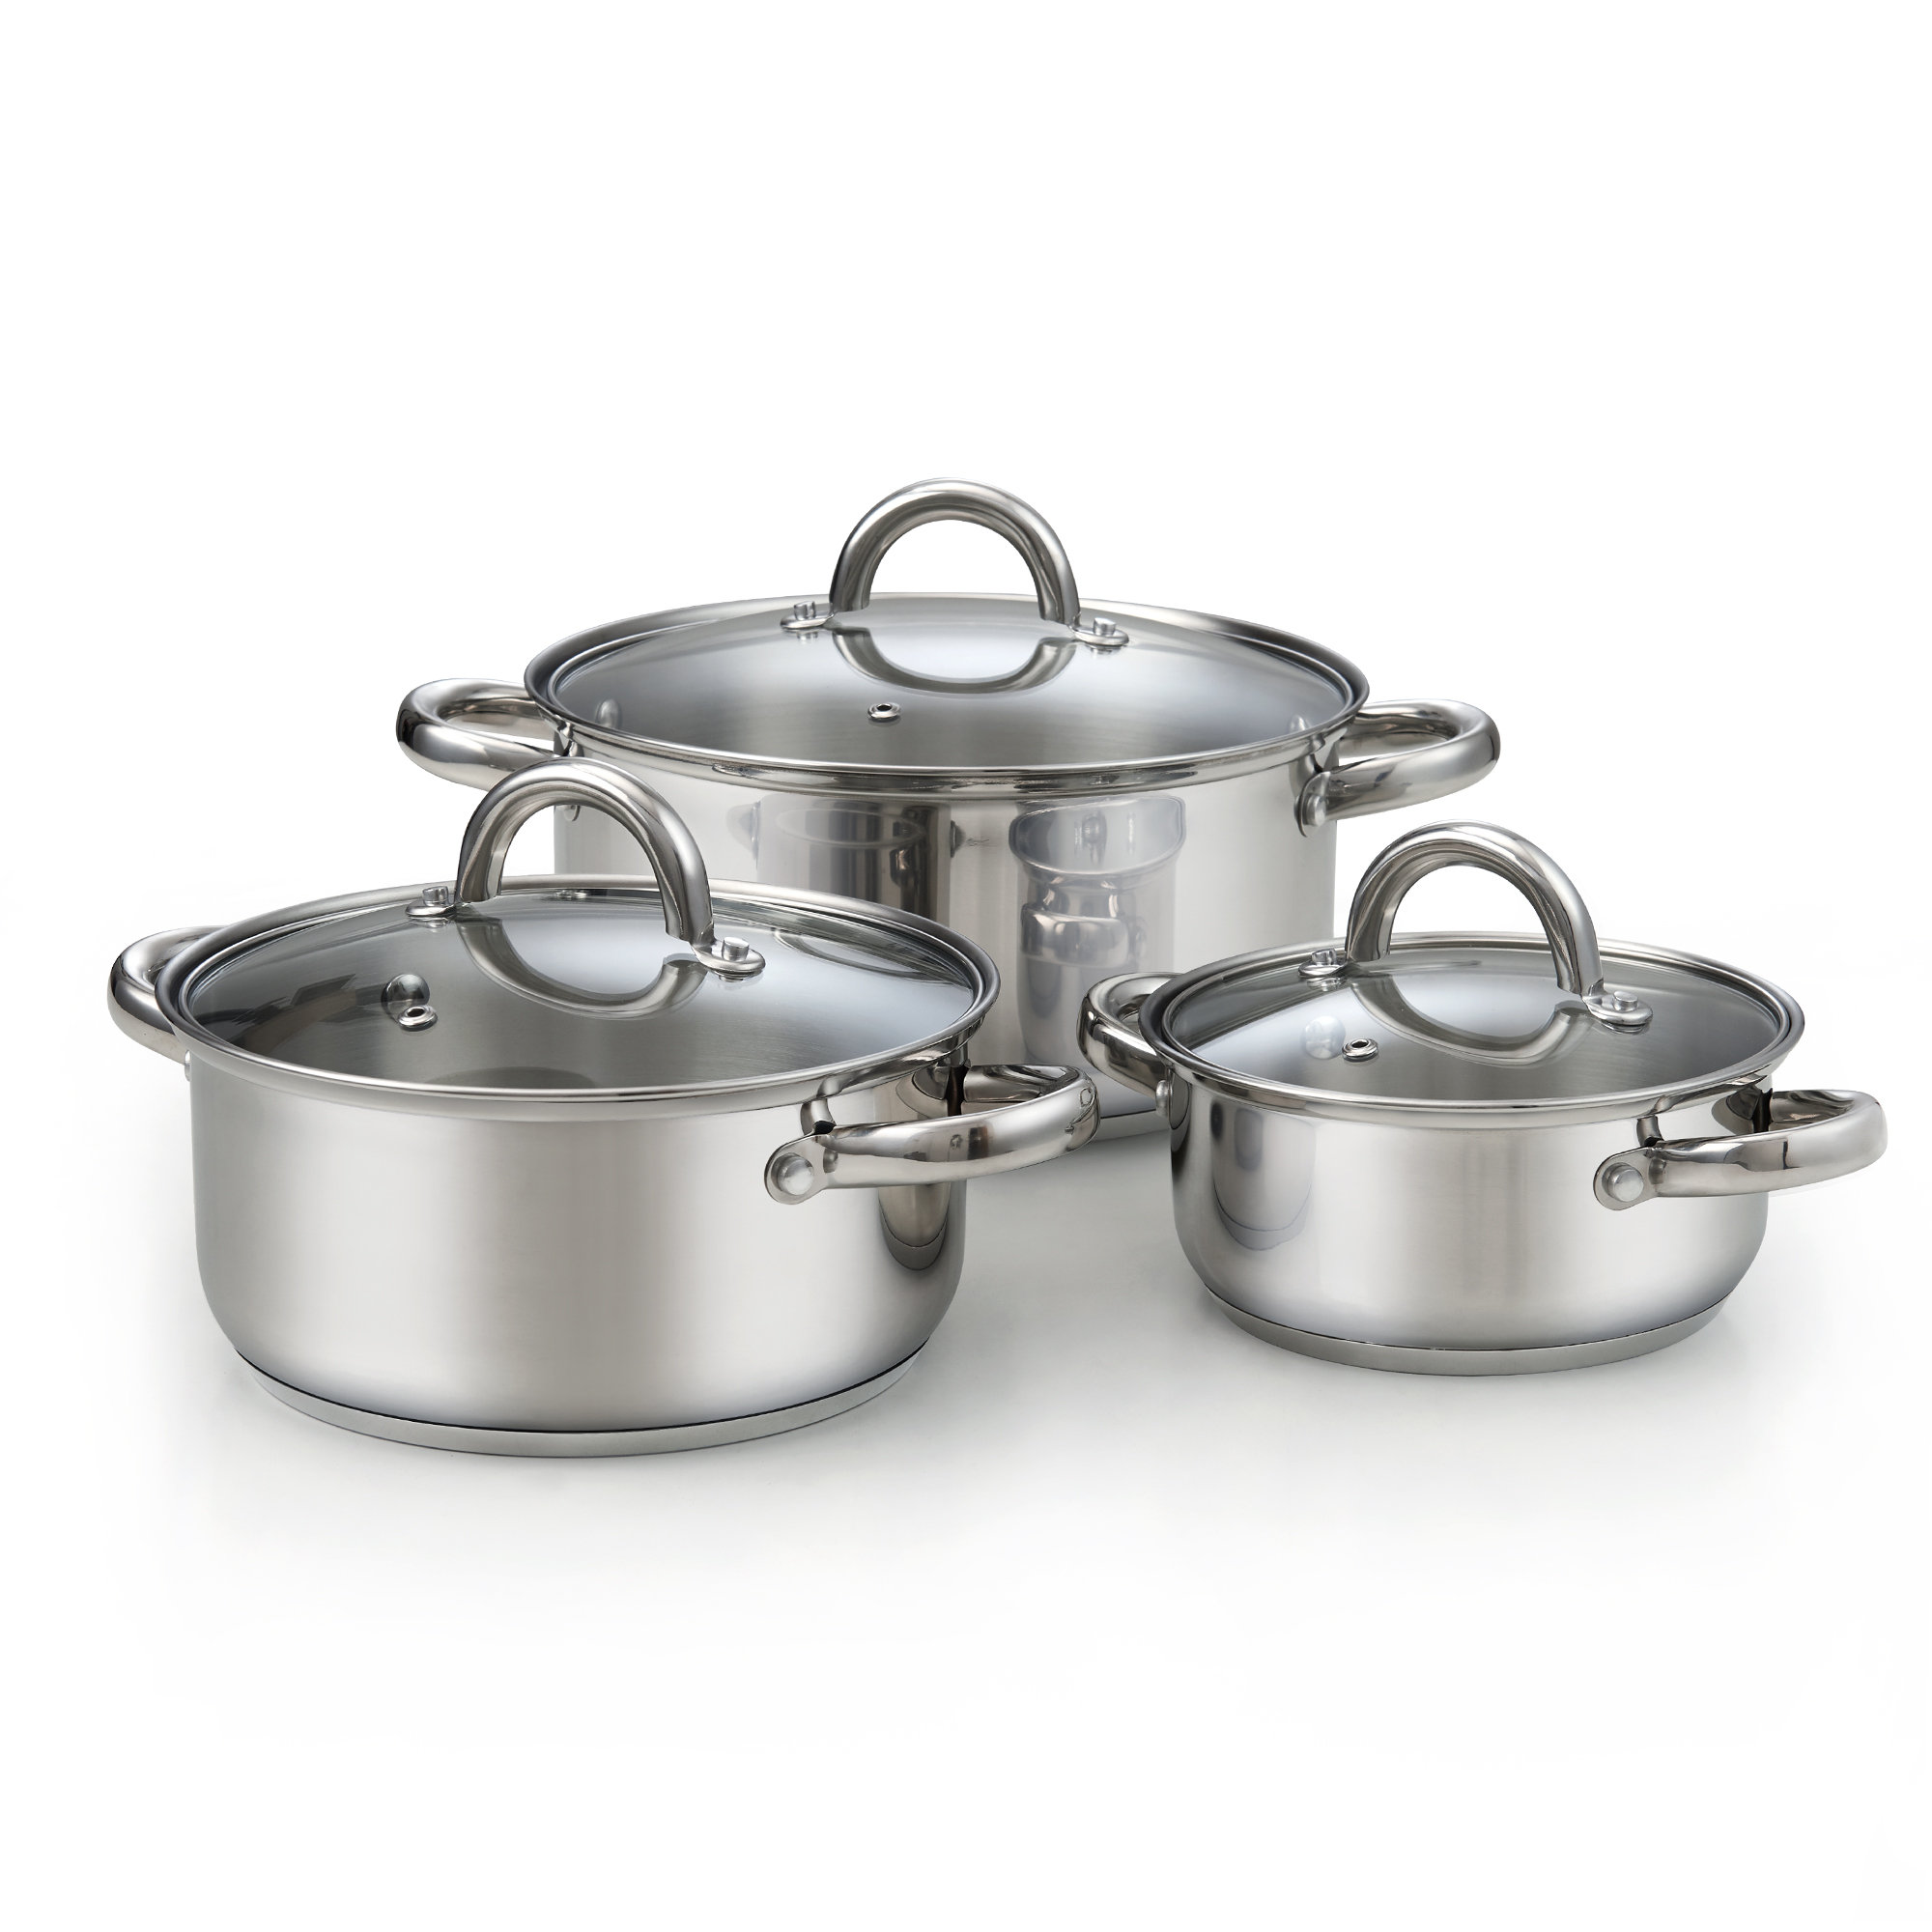 https://assets.wfcdn.com/im/32071178/compr-r85/2225/222570783/cook-n-home-basic-sauce-pot-stainless-steel-stockpot-saucier-casserole-set-6-piece.jpg